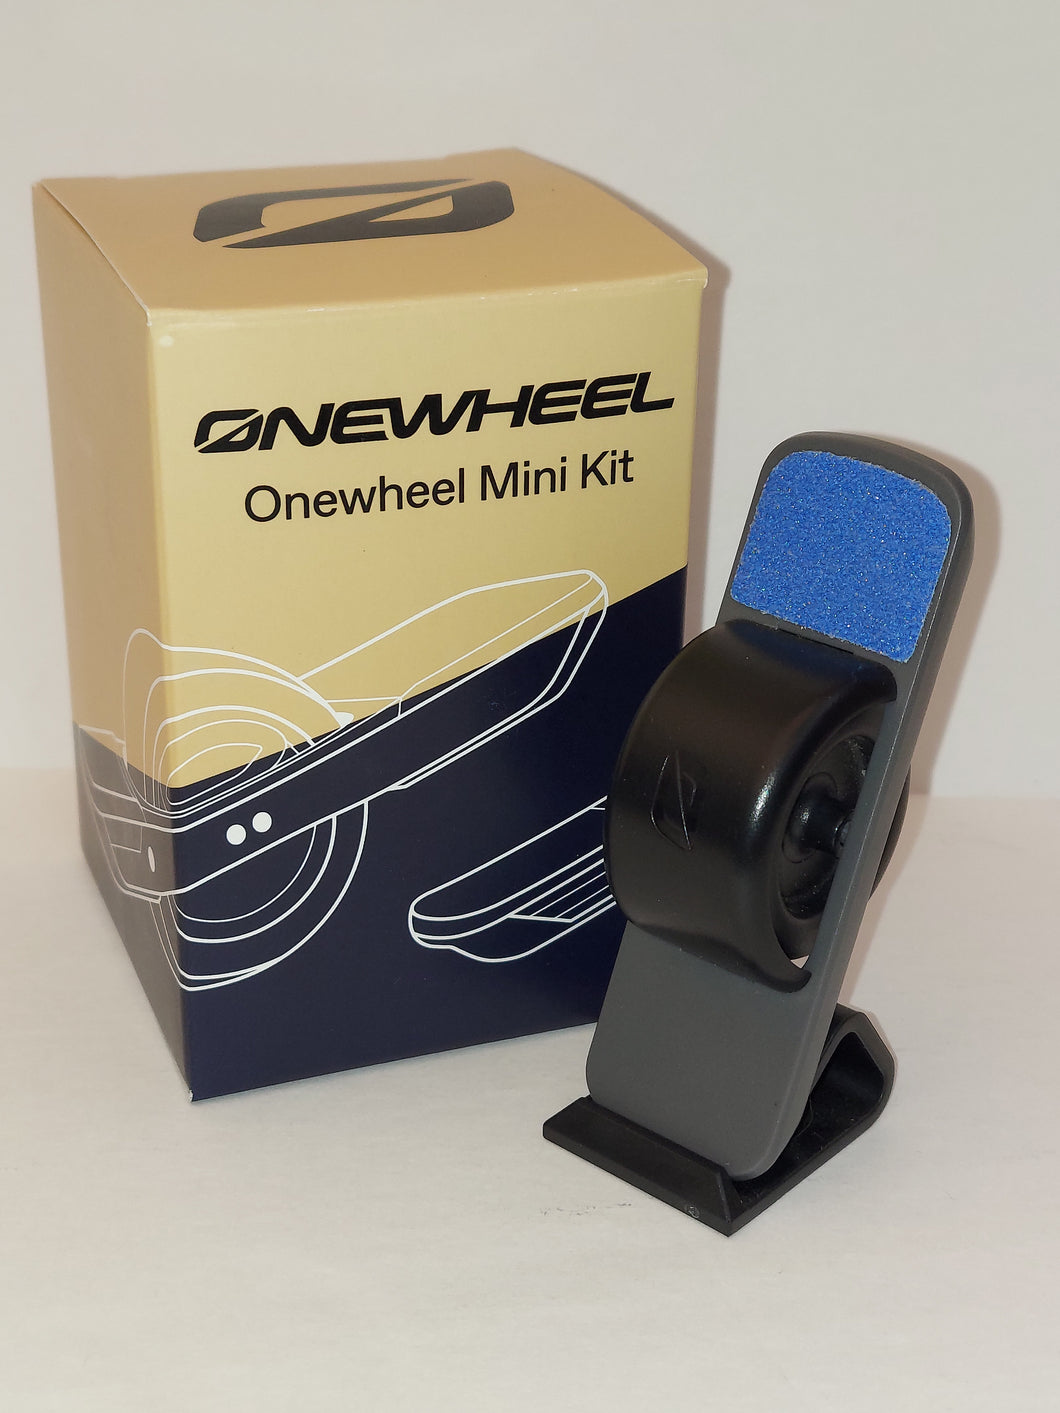 Onewheel Mini Kit.   2 Boards per box.